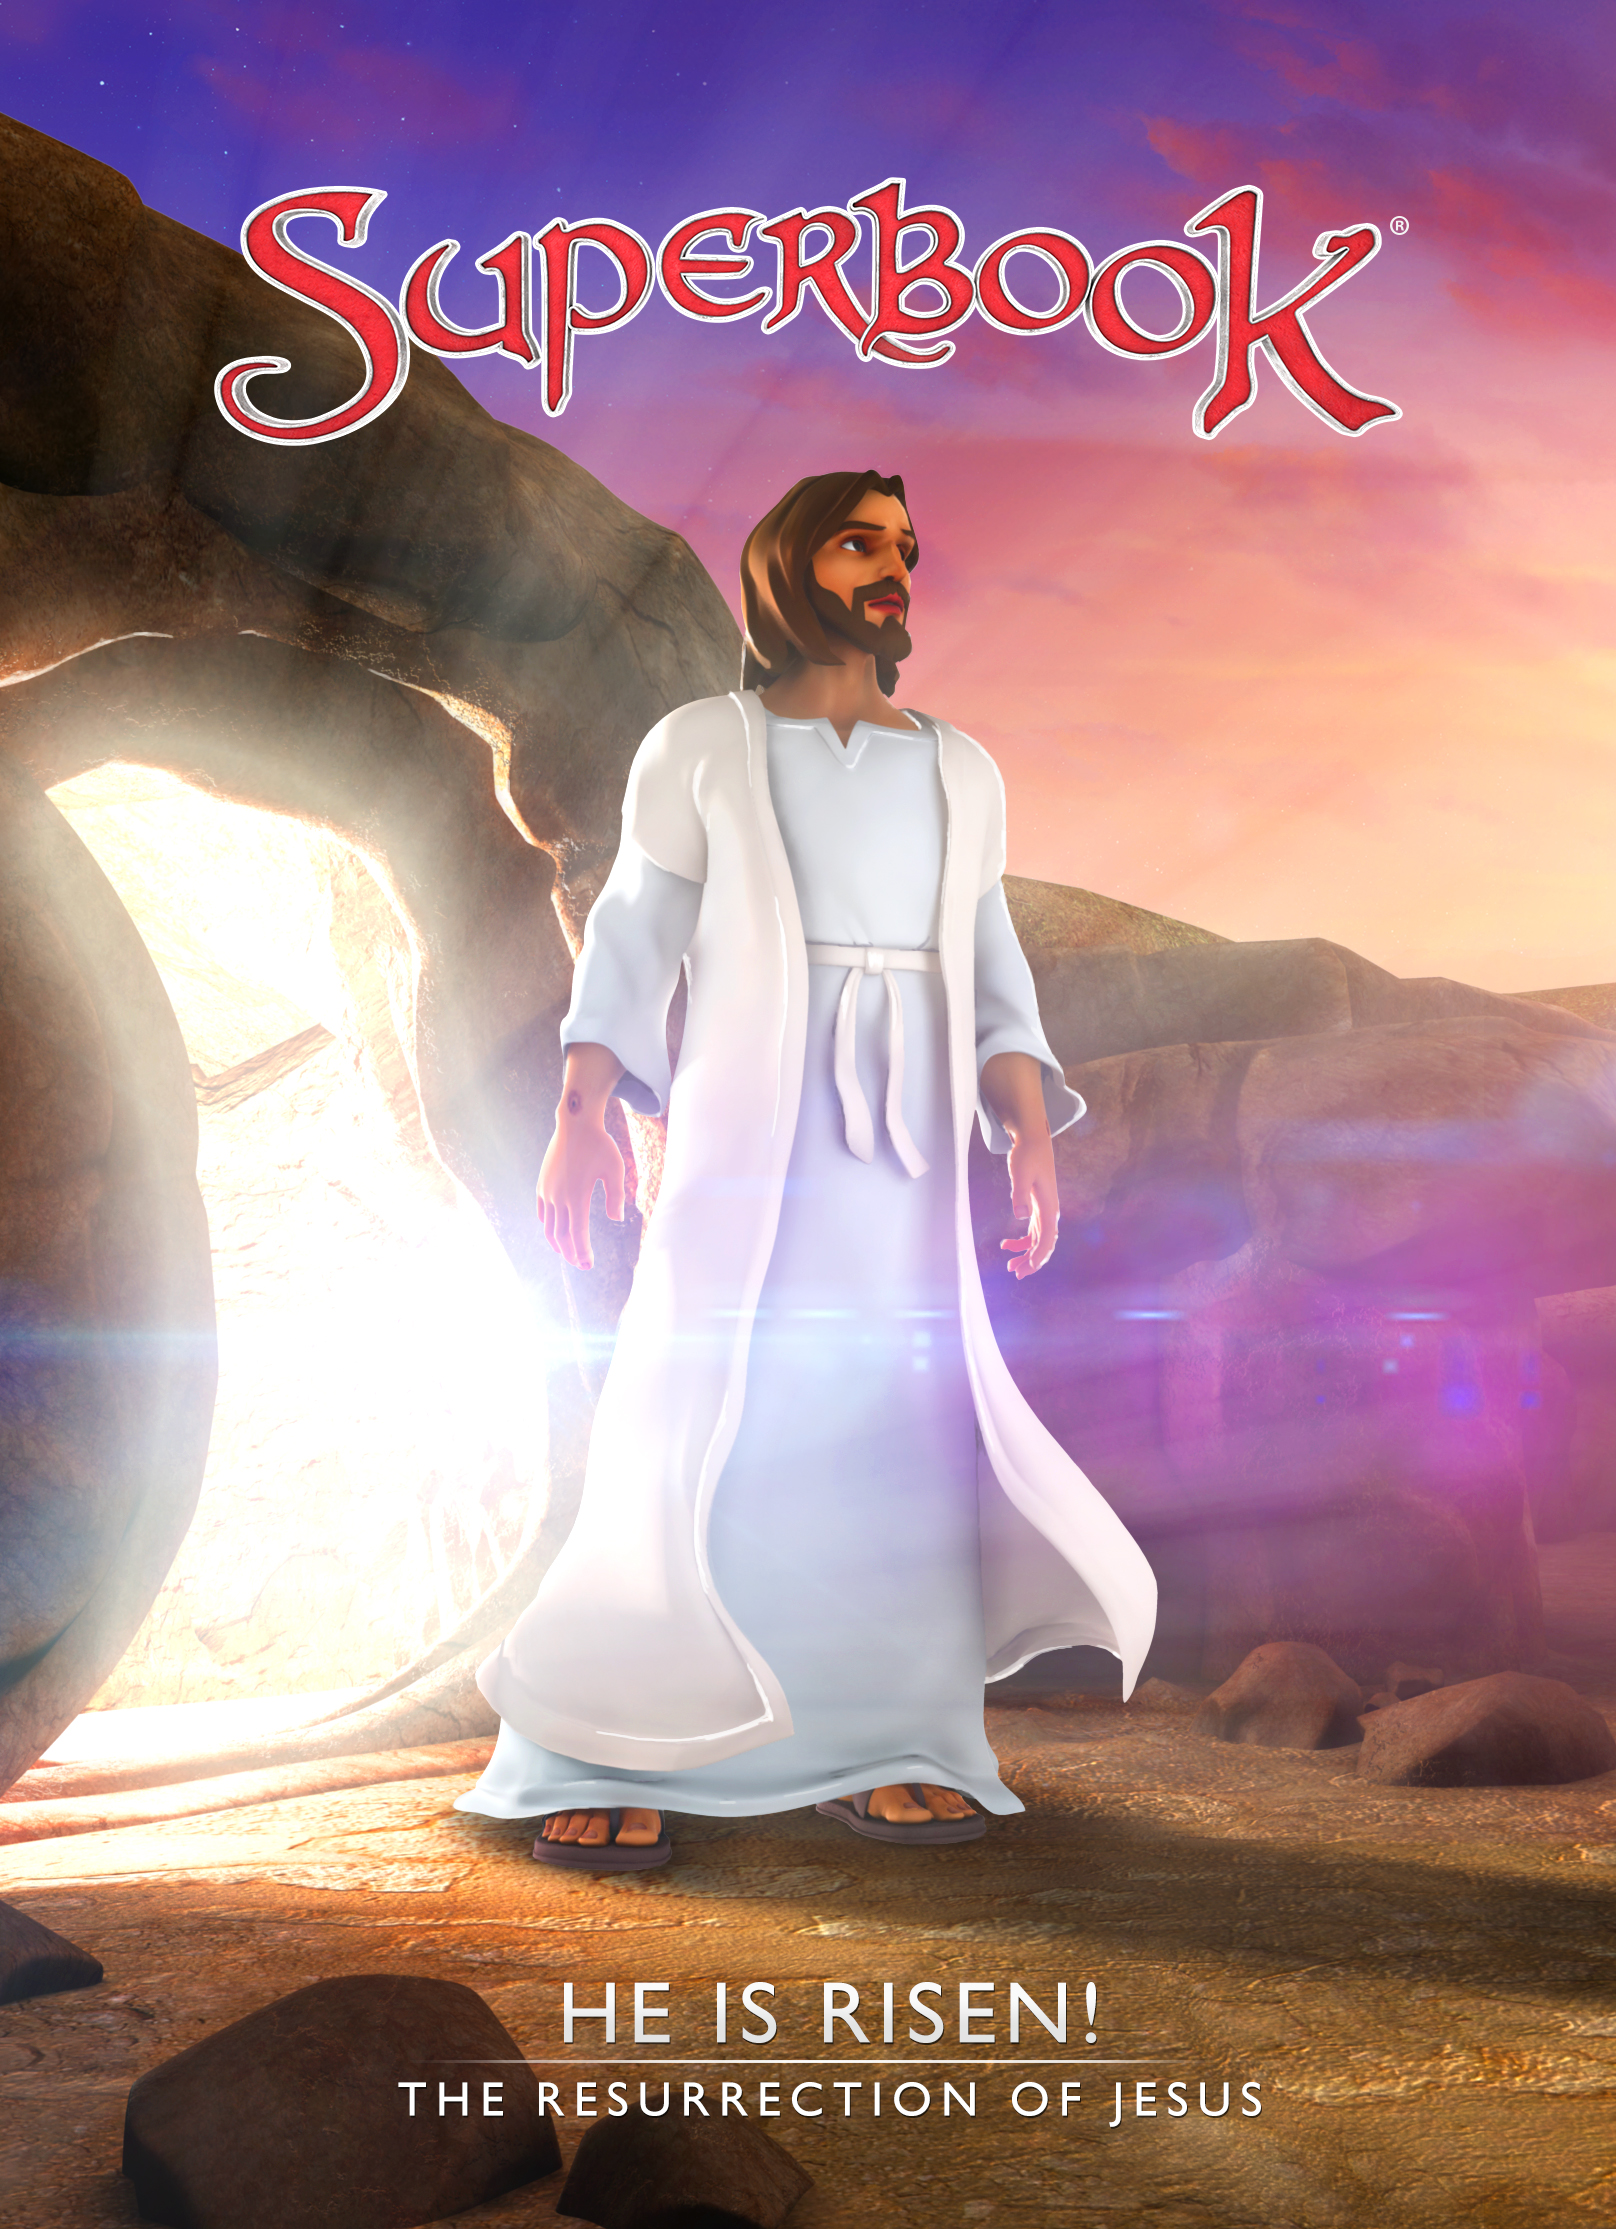 Superbook Episode 111 He is Risen!: The Resurrection of Jesus